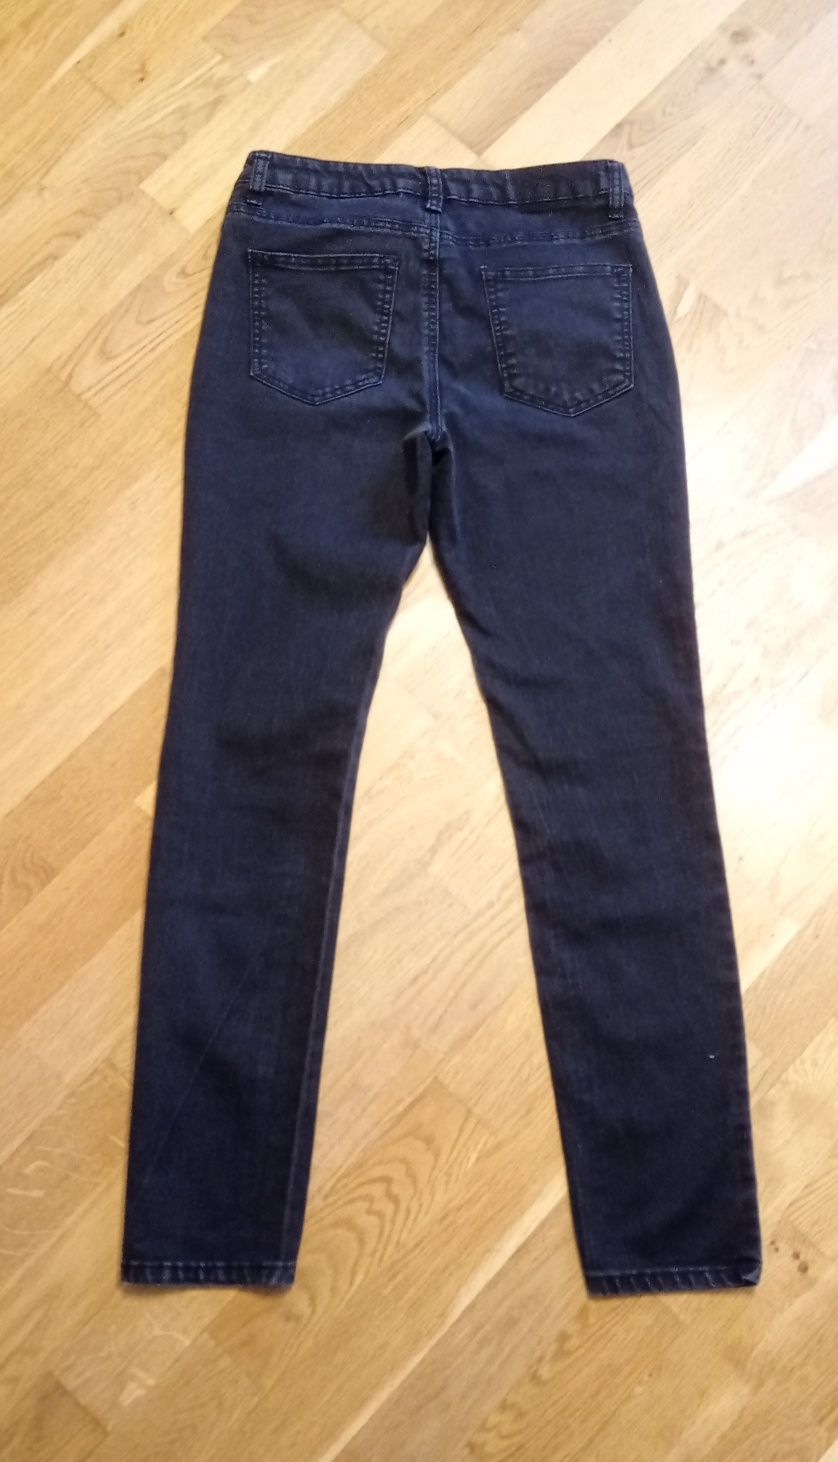 Arizona czarne spodnie jeansowe efekt sprania, r. 38